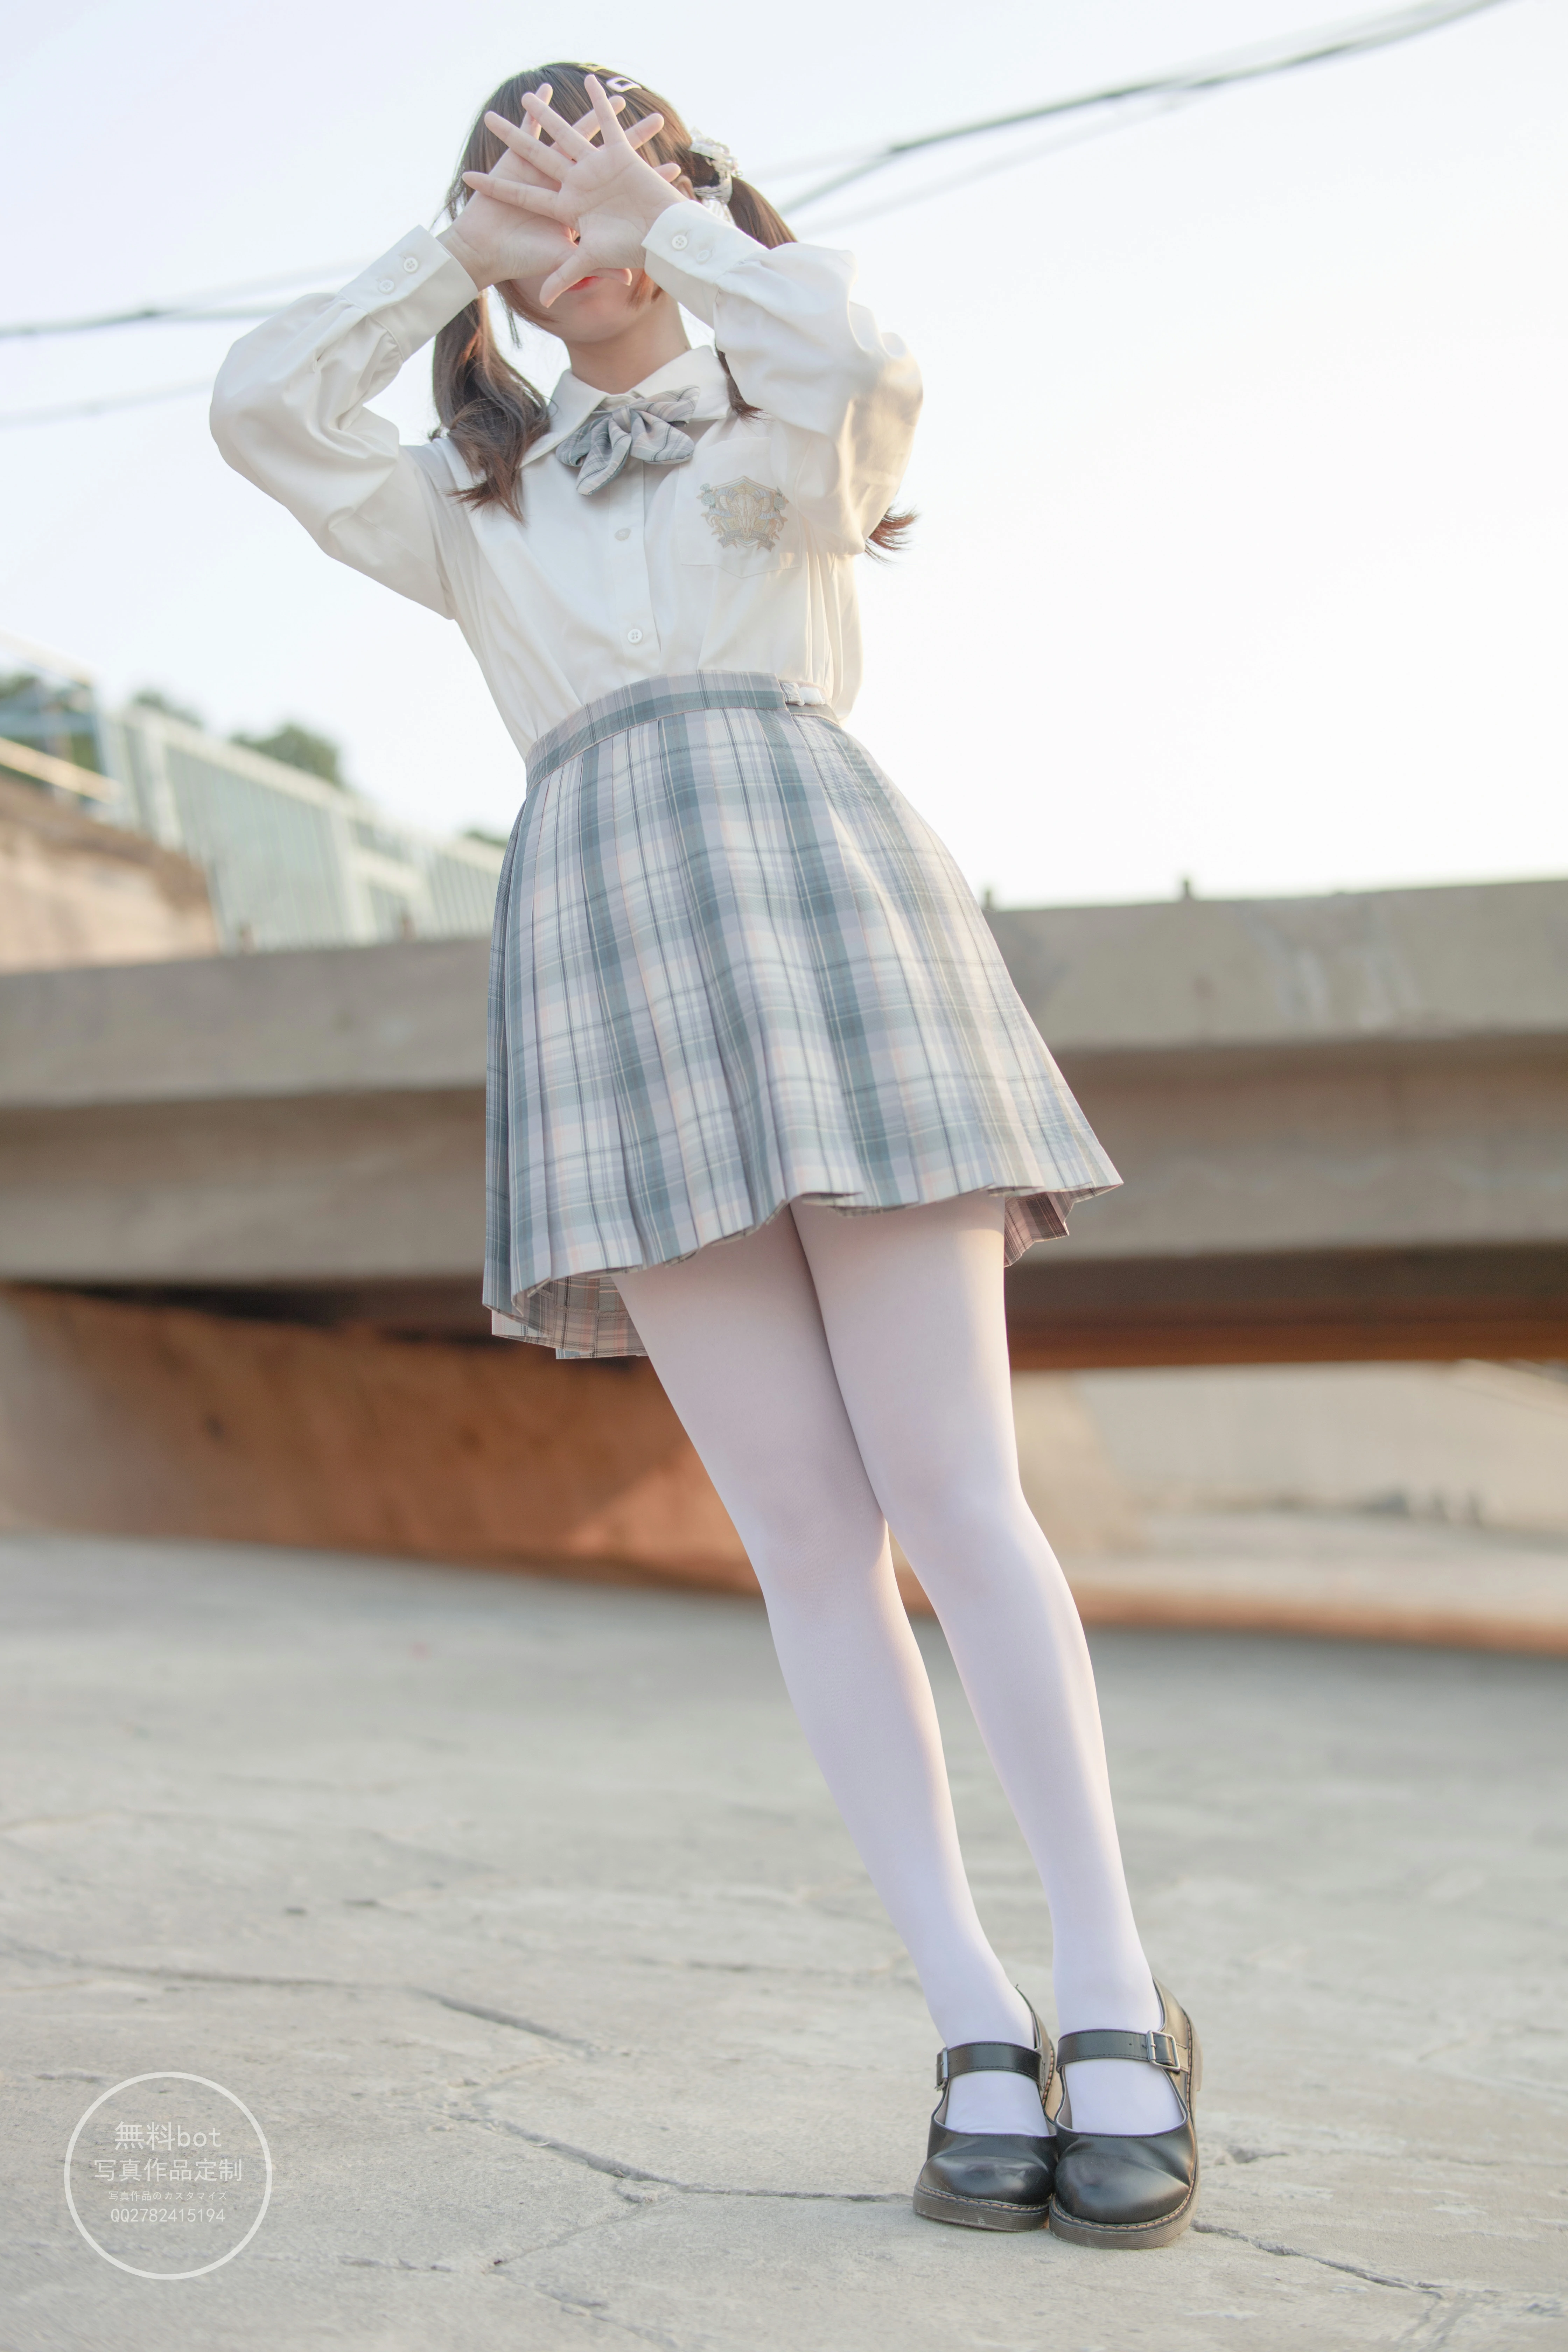 [森萝财团]有料 NO.012 清纯小萝莉 日本高中女生制服与格子短裙加白色丝袜美腿玉足性感私房写真集,